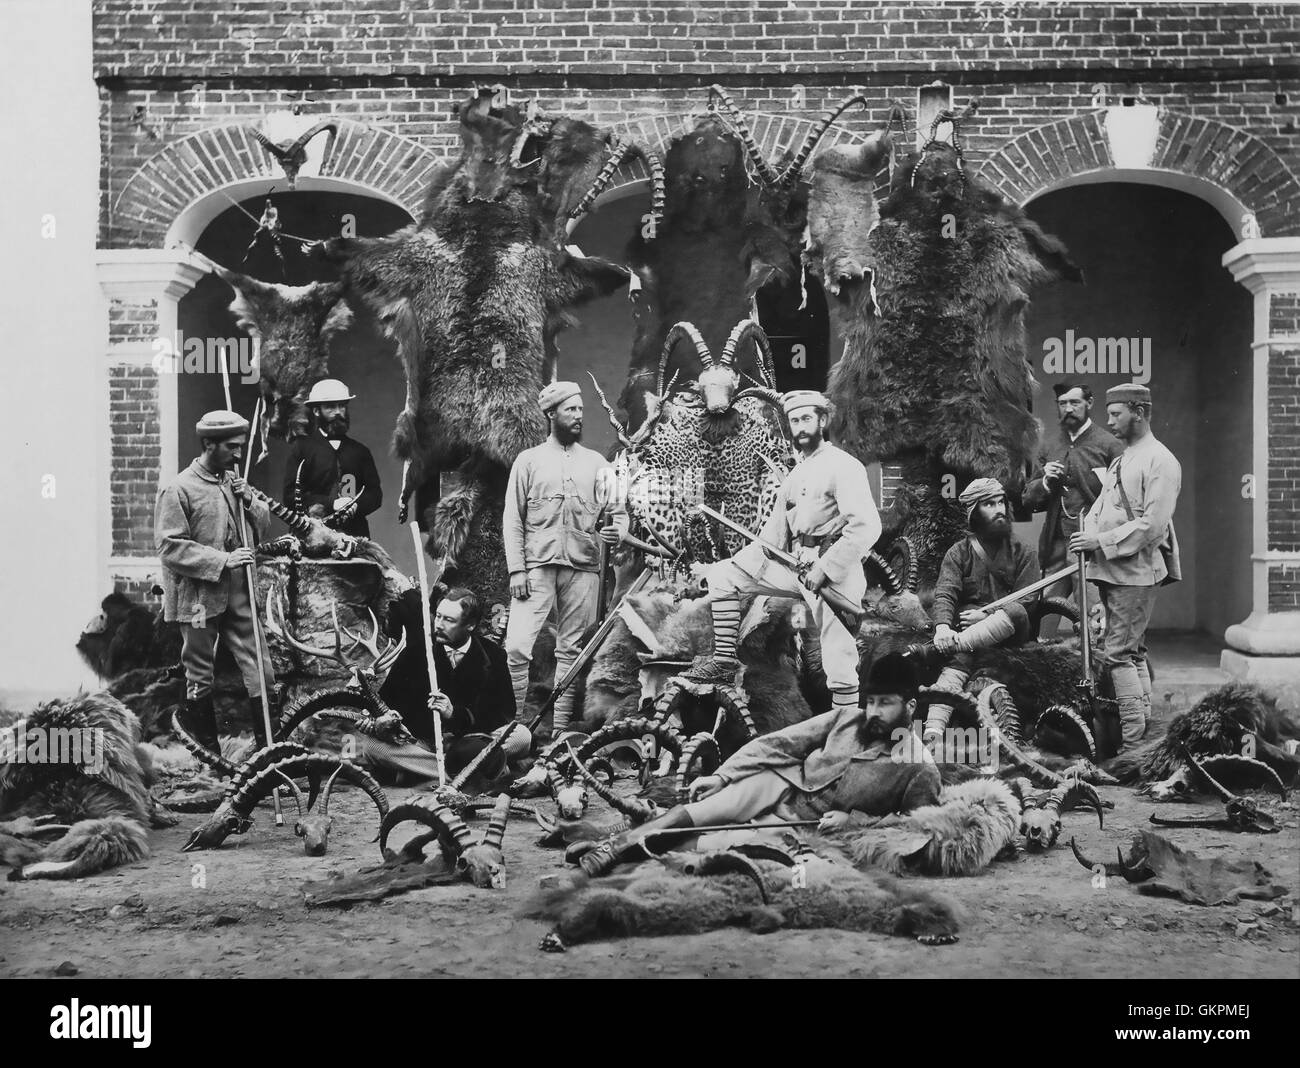 SAMUEL BOURNE (1834-1912) fotografo inglese meglio conosciuto per il suo lavoro in India come questo studio di un gruppo di cacciatori presi nel 1860s Foto Stock